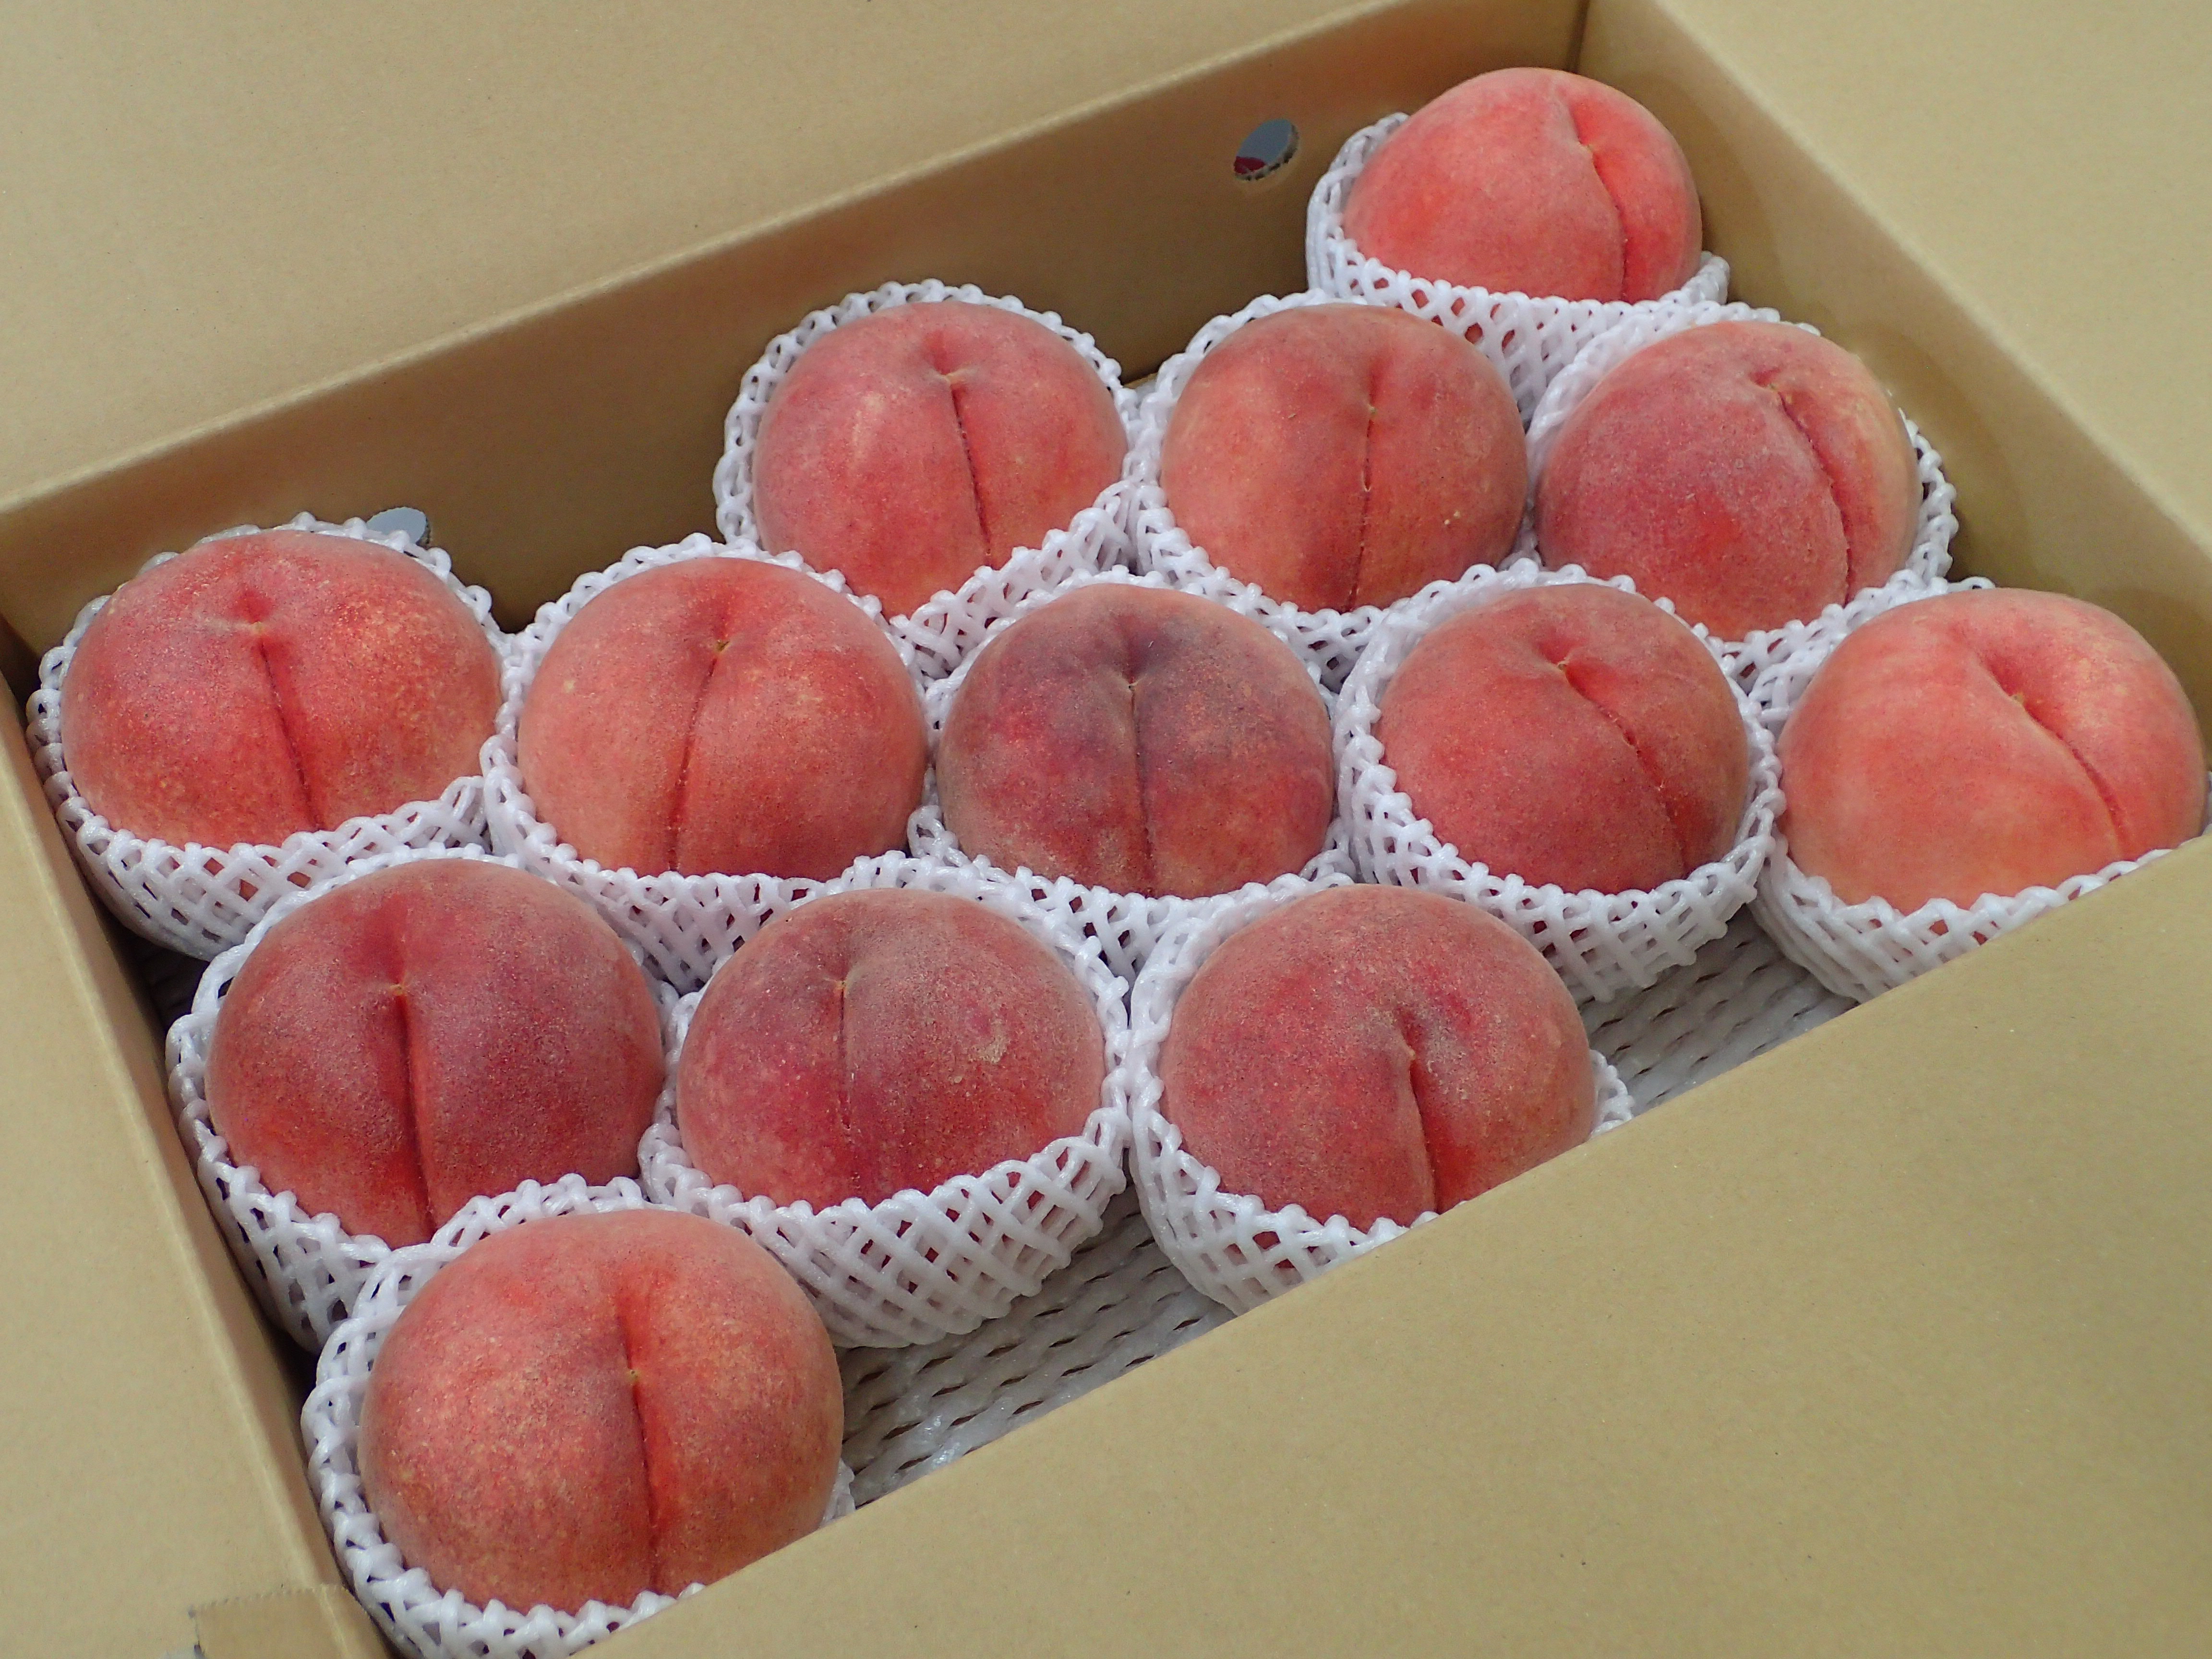 フルーツキャップを被って箱に入った、送られてきたばかりの桃